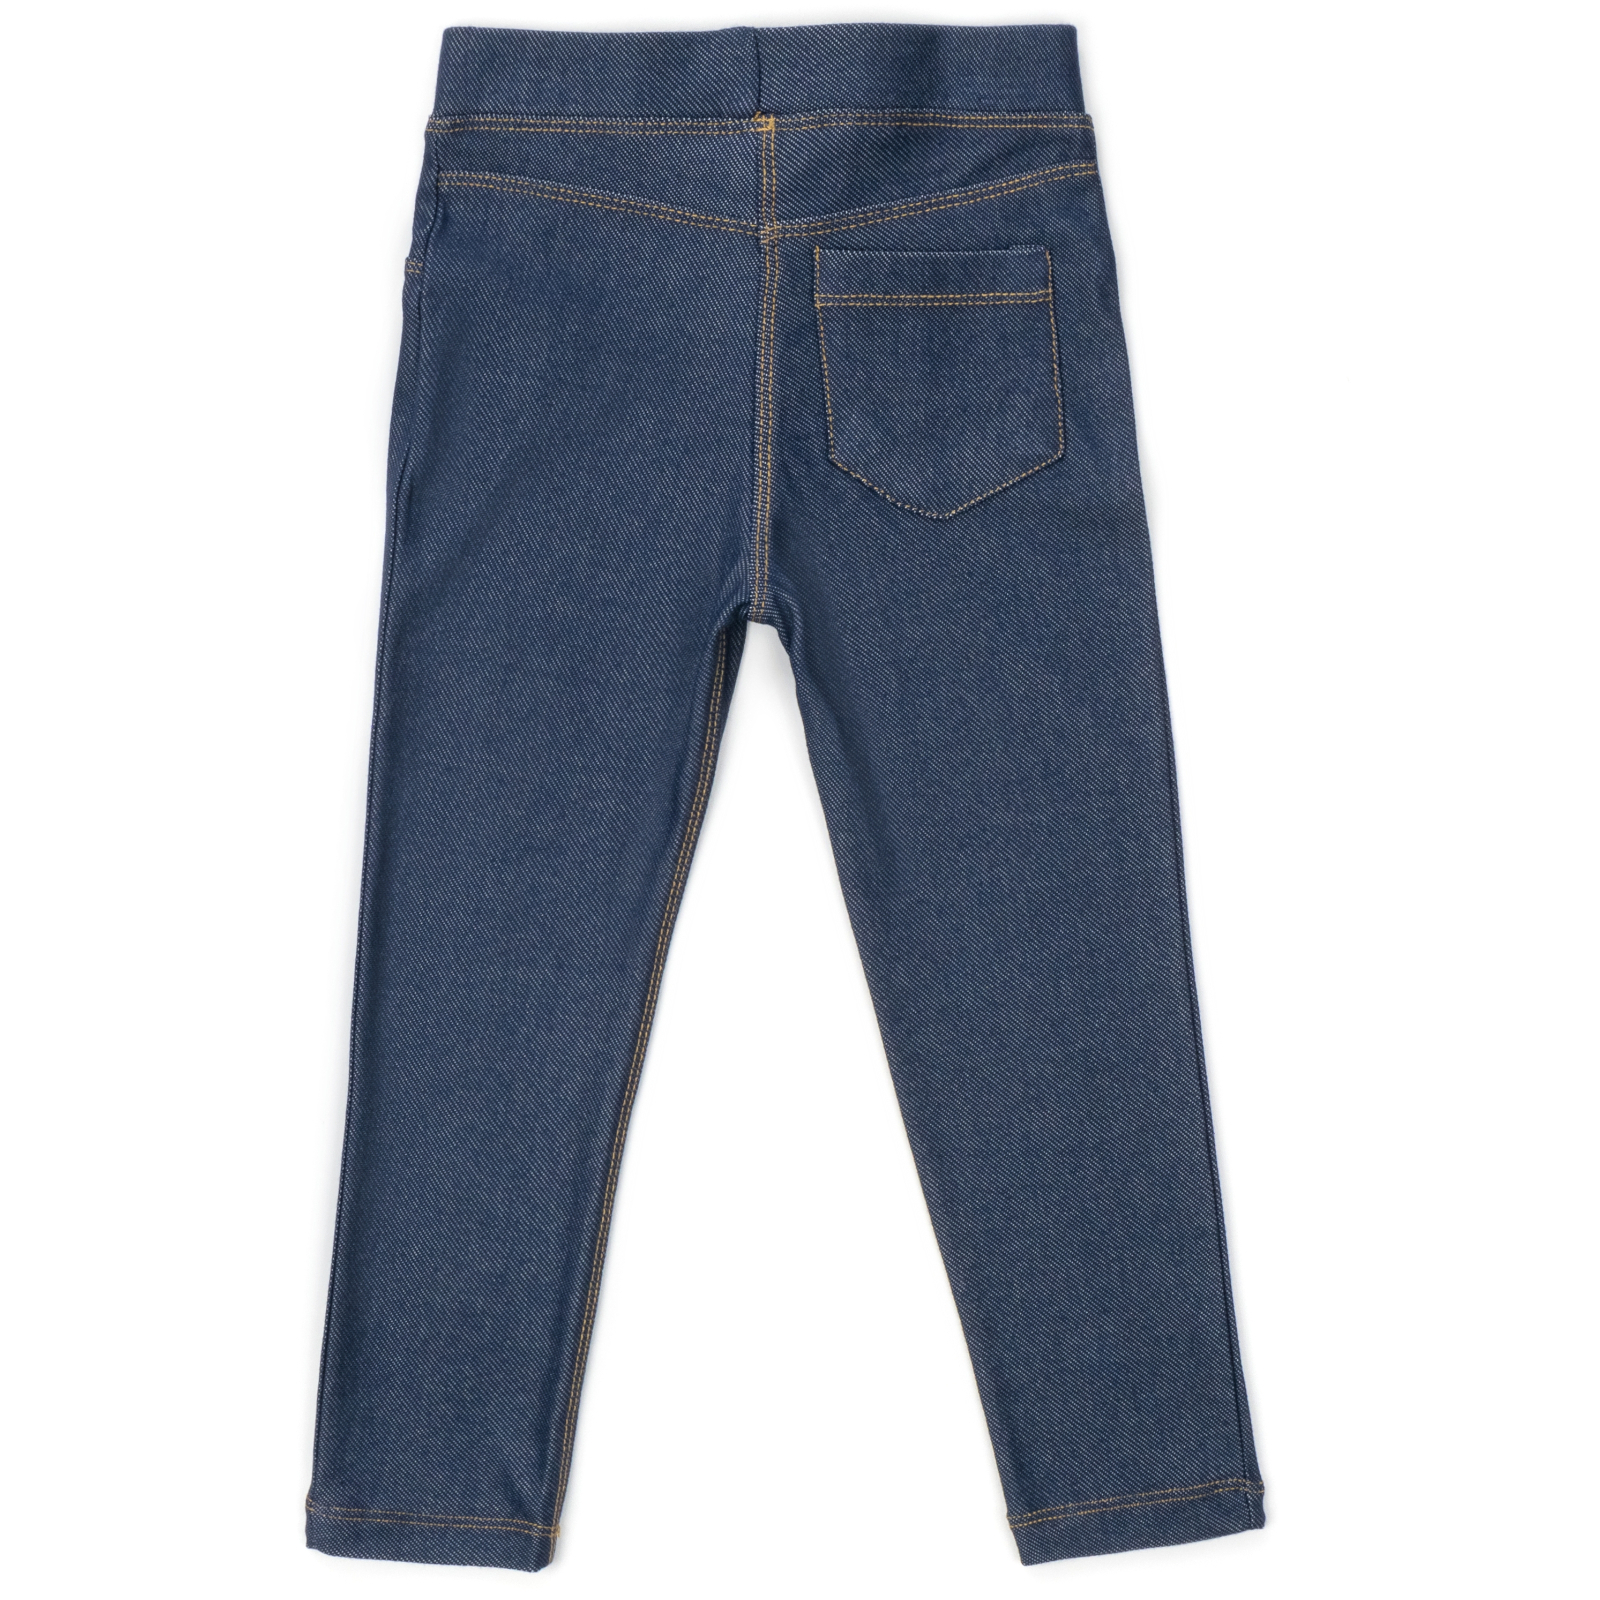 Лосины Breeze трикотажные (4415-104G-jeans) изображение 2